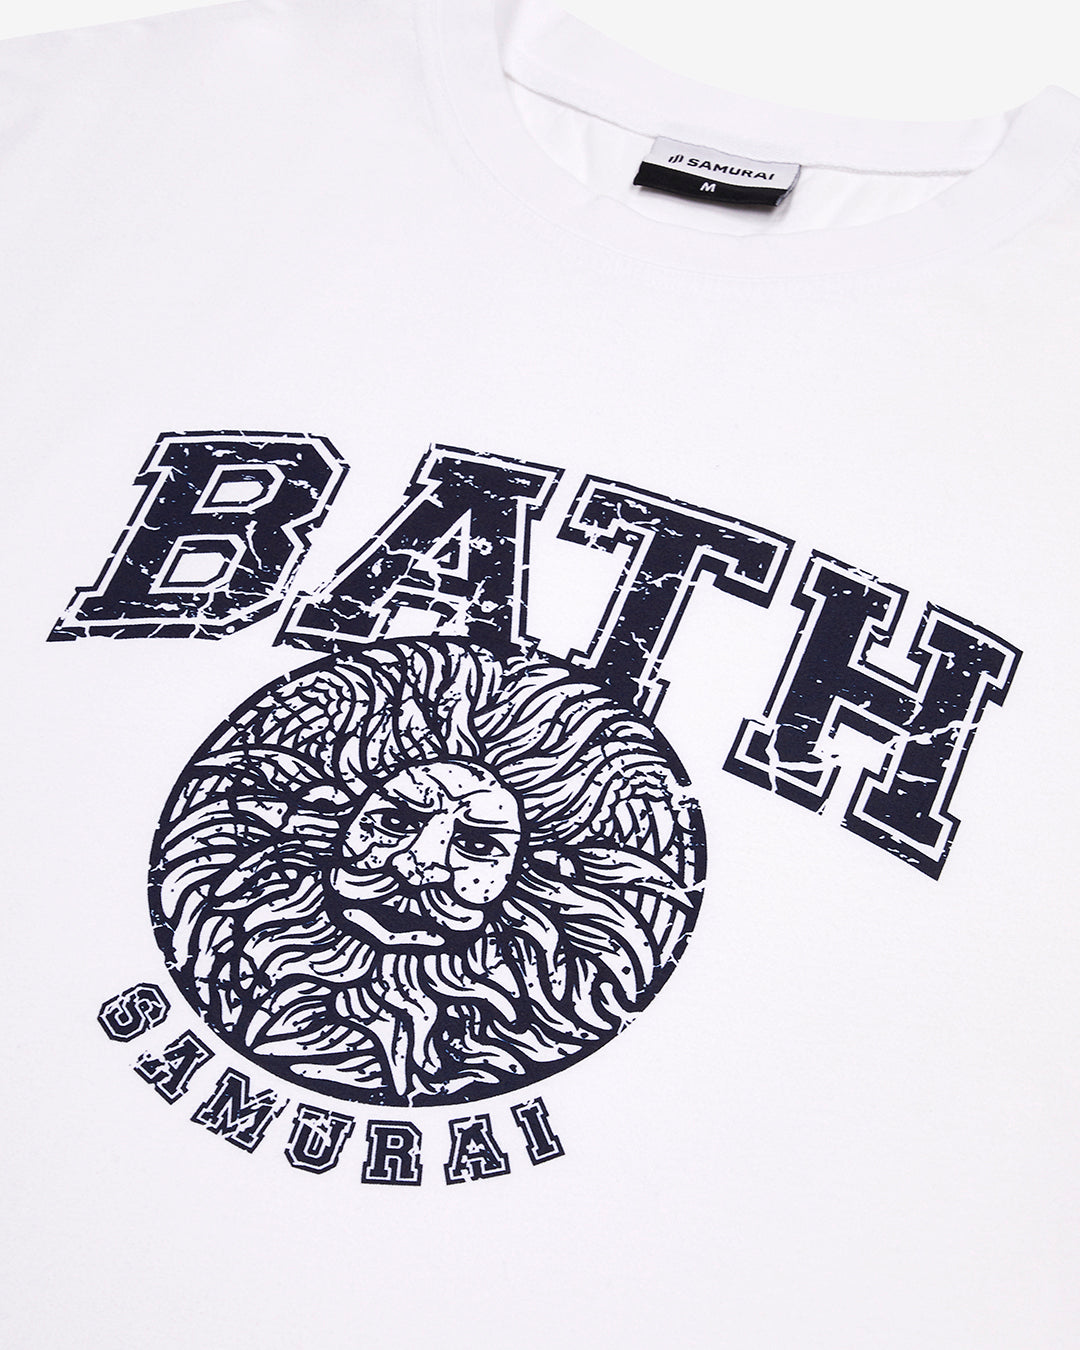 OC: 00-06 - Women's Bath T-Shirt - White